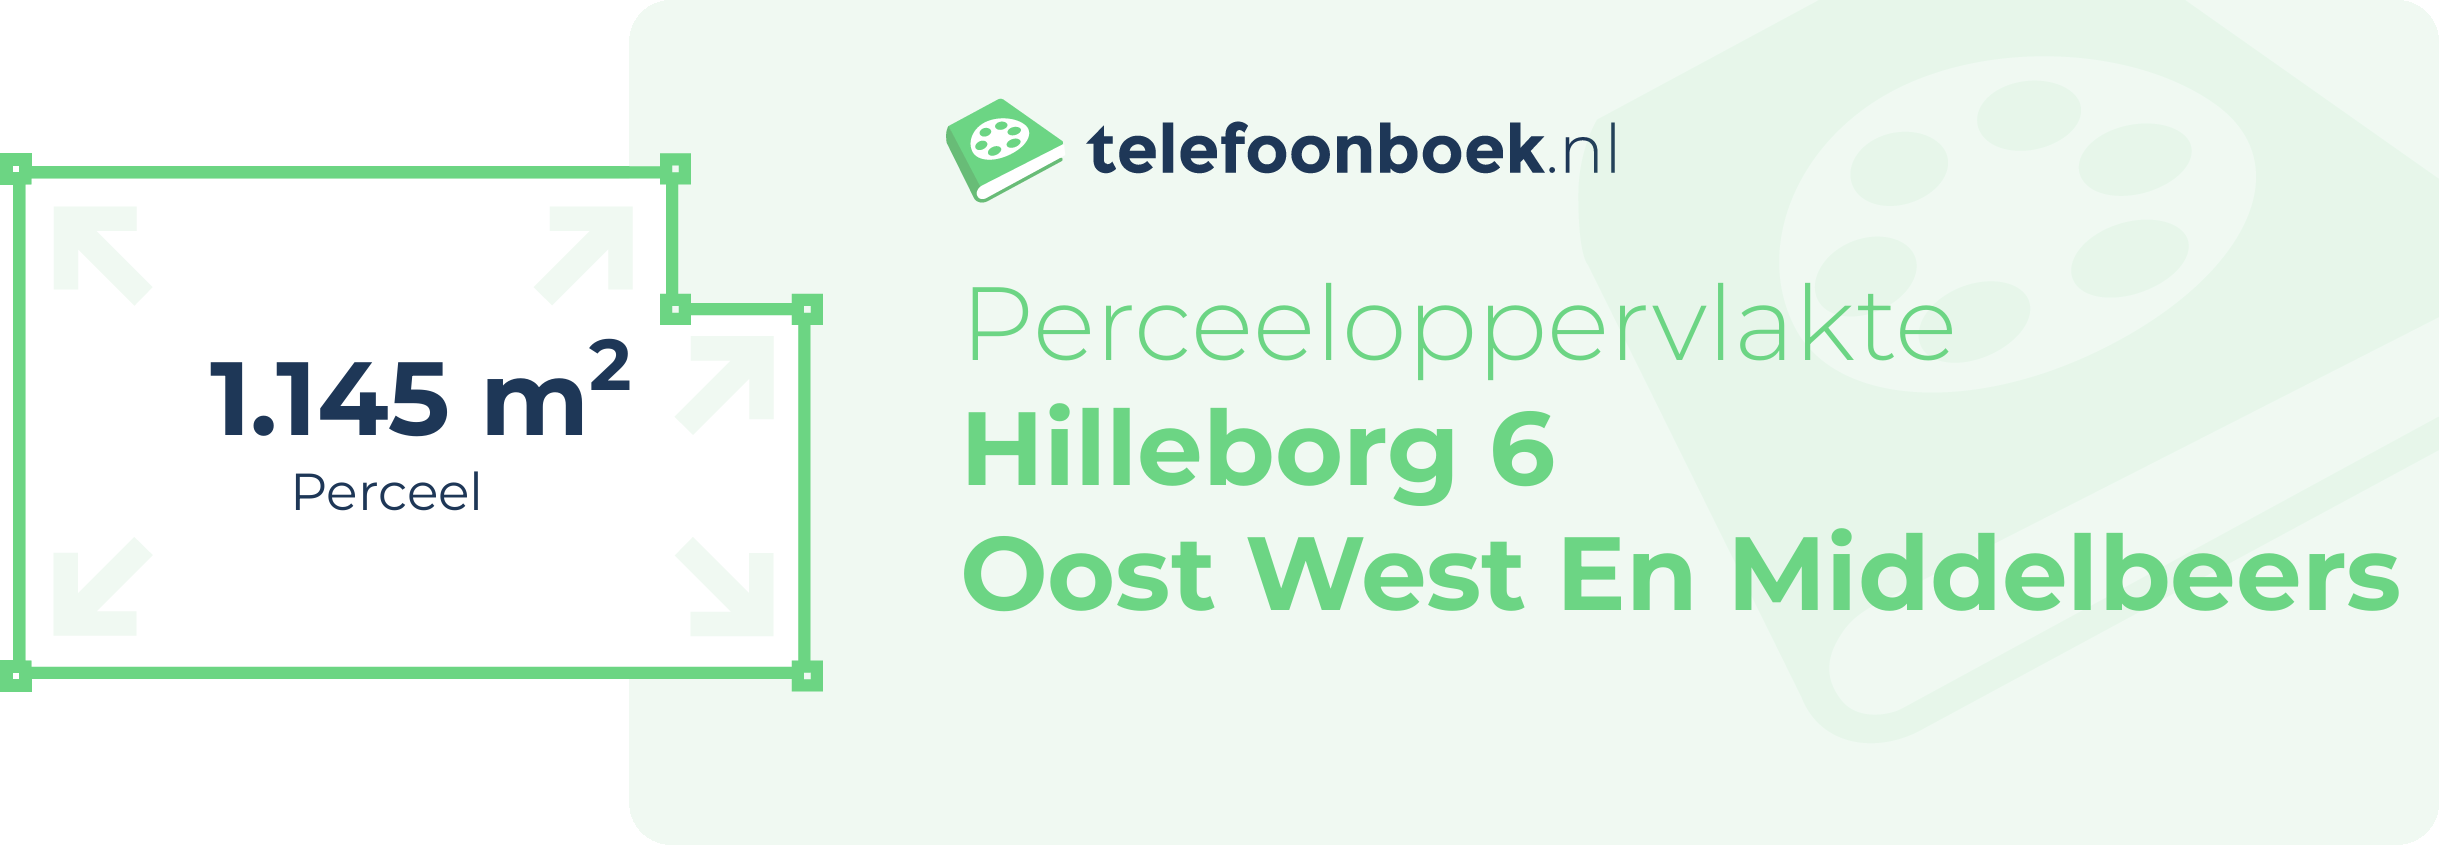 Perceeloppervlakte Hilleborg 6 Oost West En Middelbeers